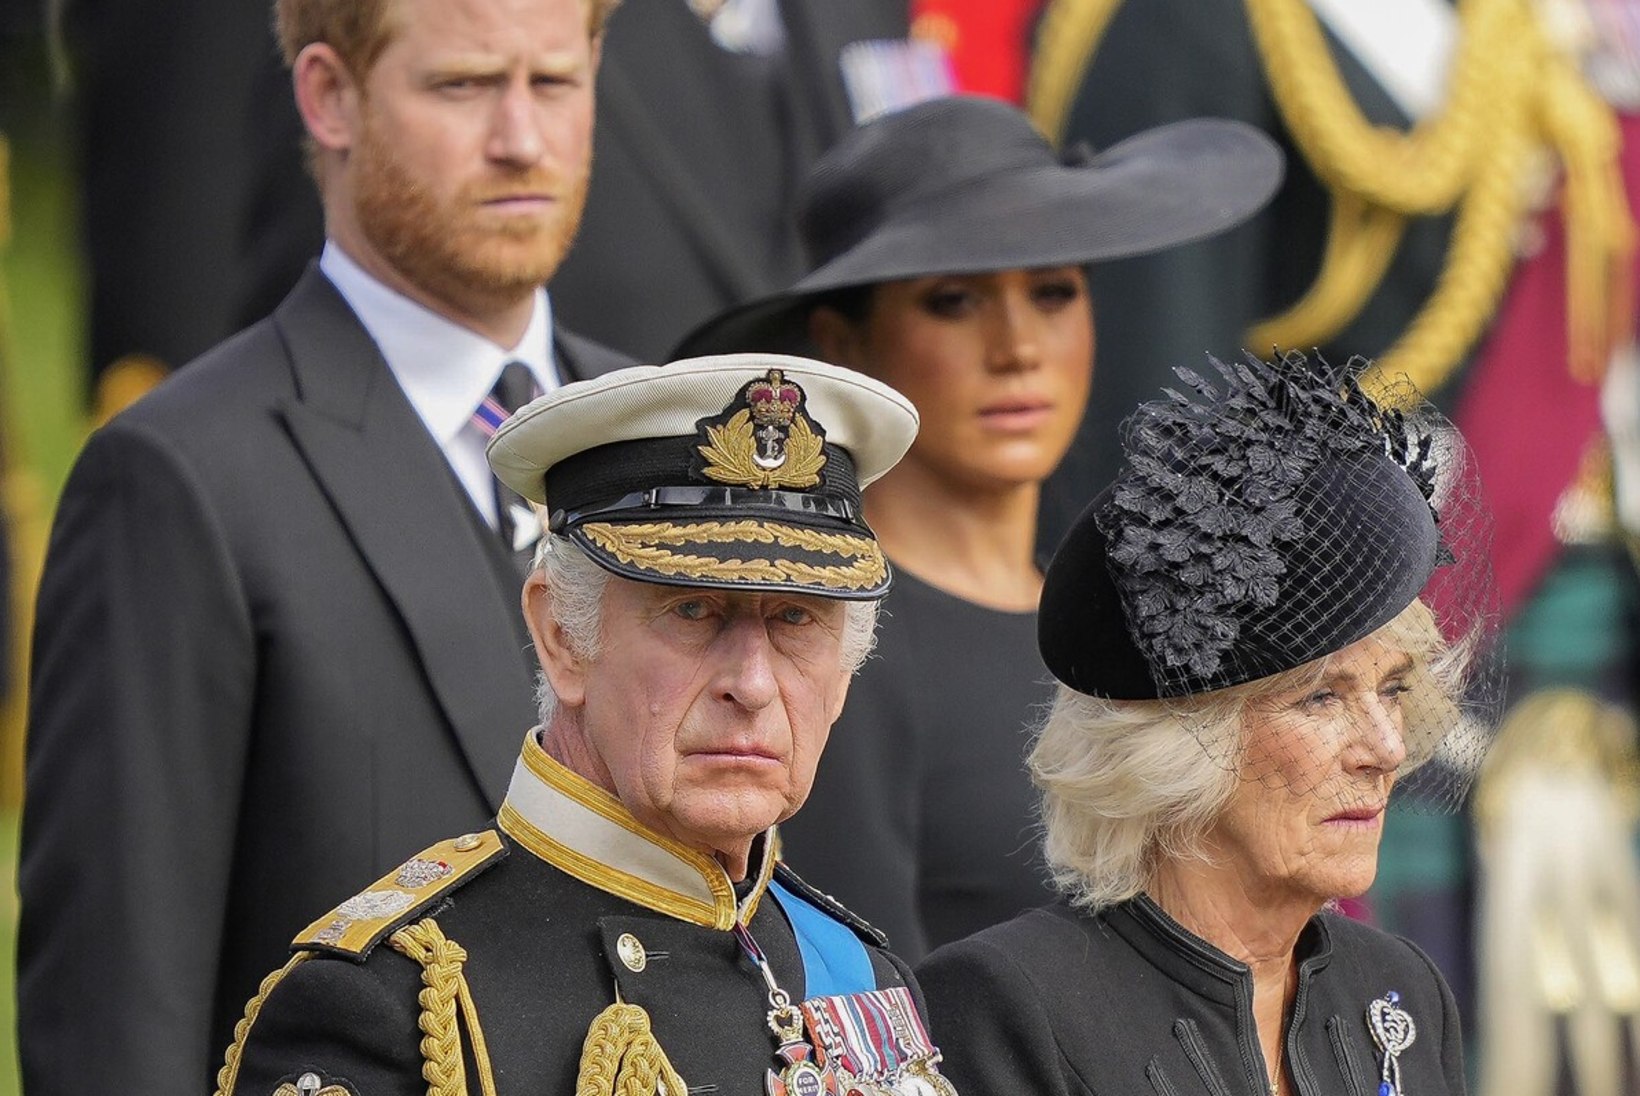 Kas Charles III annab Harry lastele tiitlid? Väidetavalt teeb ta seda ühel tingimusel